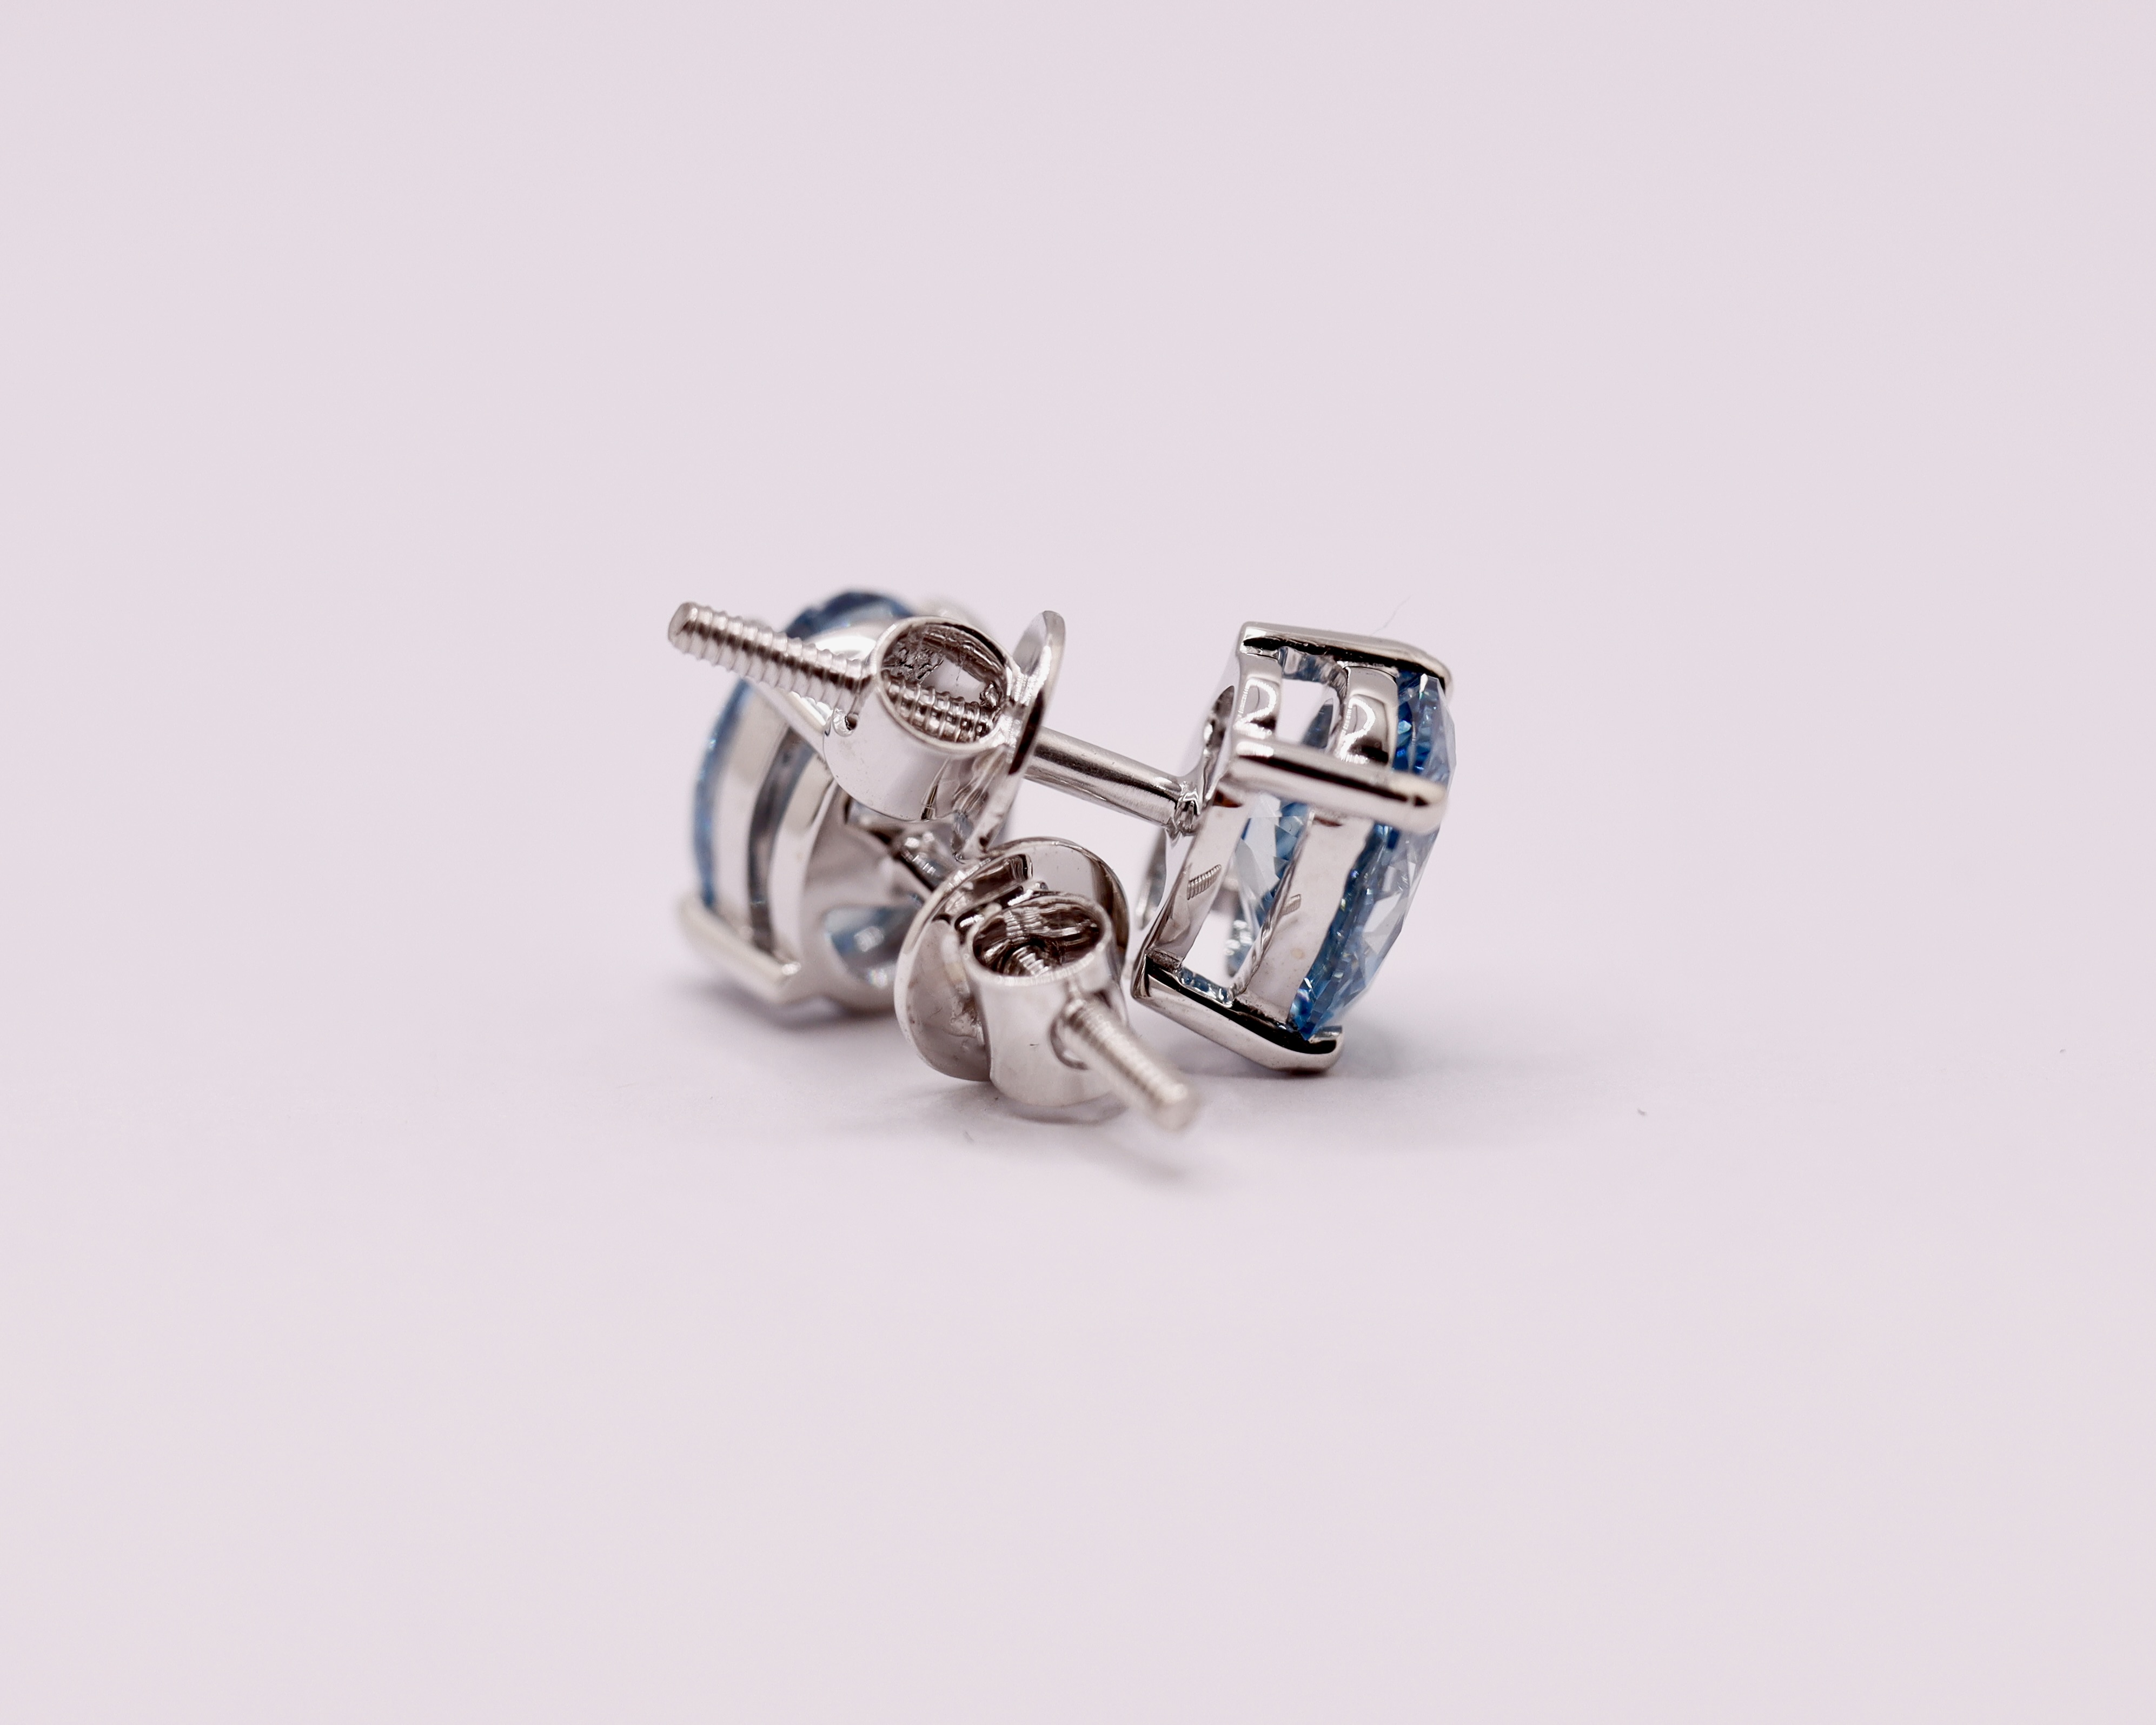 Fancy Blue Oval Cut 2.25 Carat Diamond 18Kt White Gold Earring Set -VS1 Clarity - Image 8 of 13